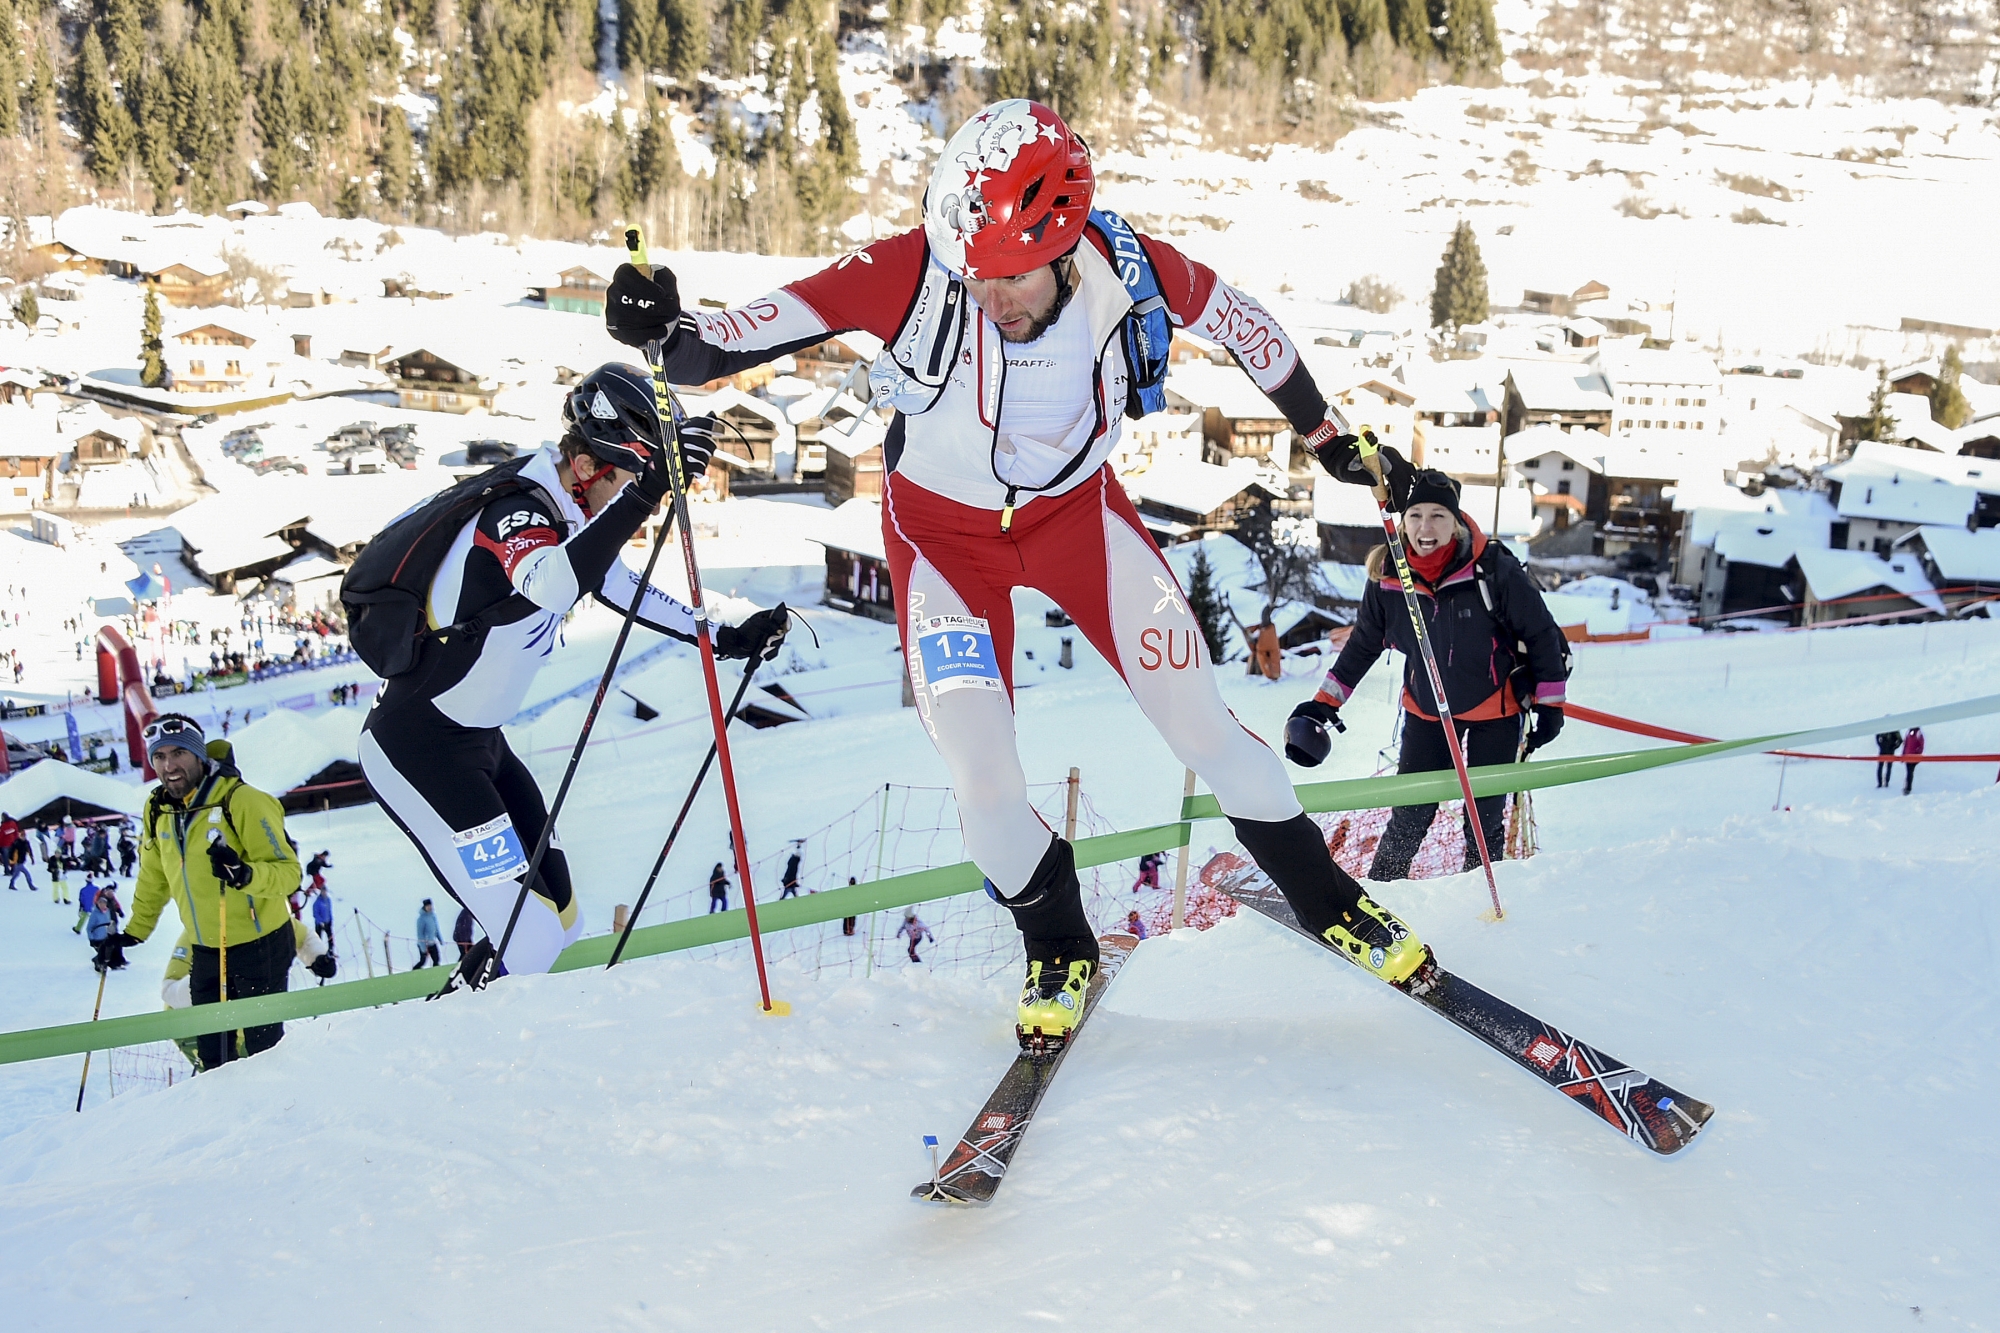 Yannick Ecoeur est partagé entre la tradition des courses mythiques qui font l'essence même du ski-alpinisme et l'évolution de sa discipline qui veut devenir olympique.